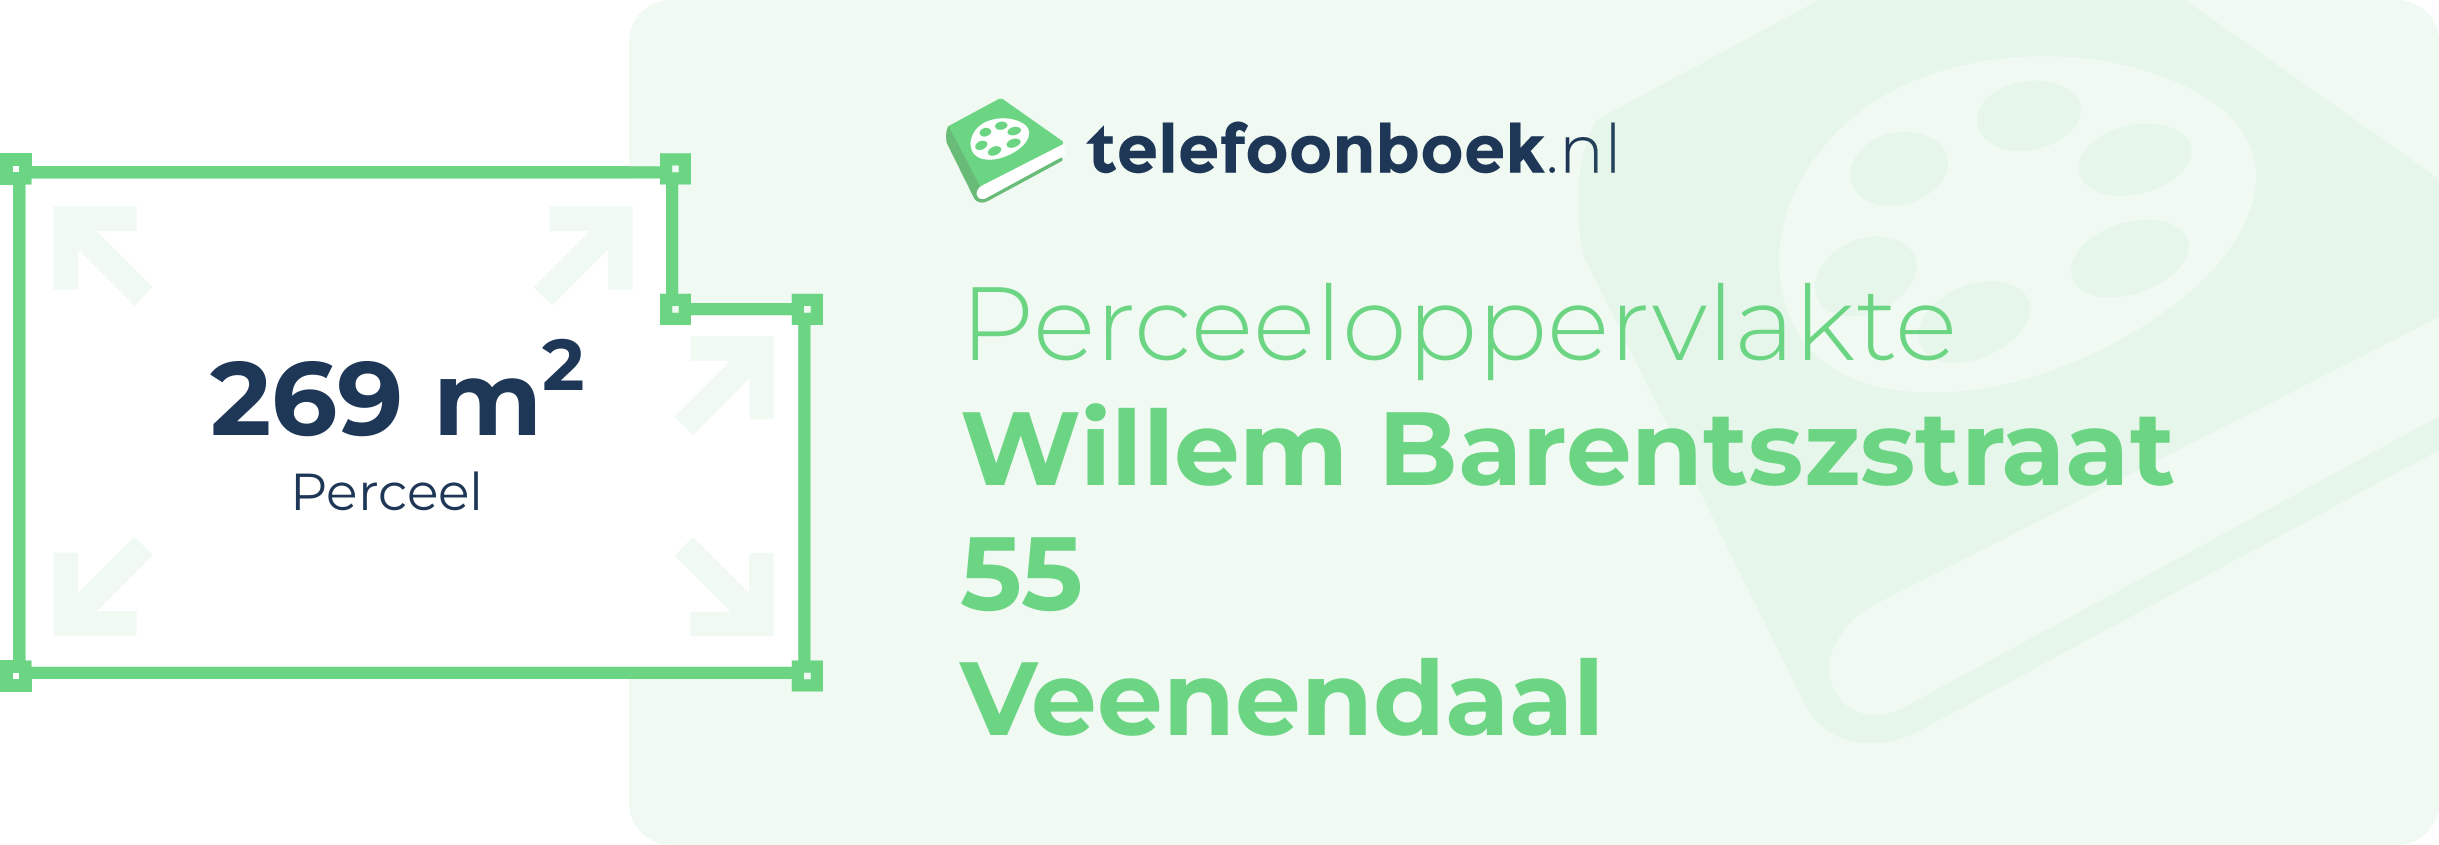 Perceeloppervlakte Willem Barentszstraat 55 Veenendaal